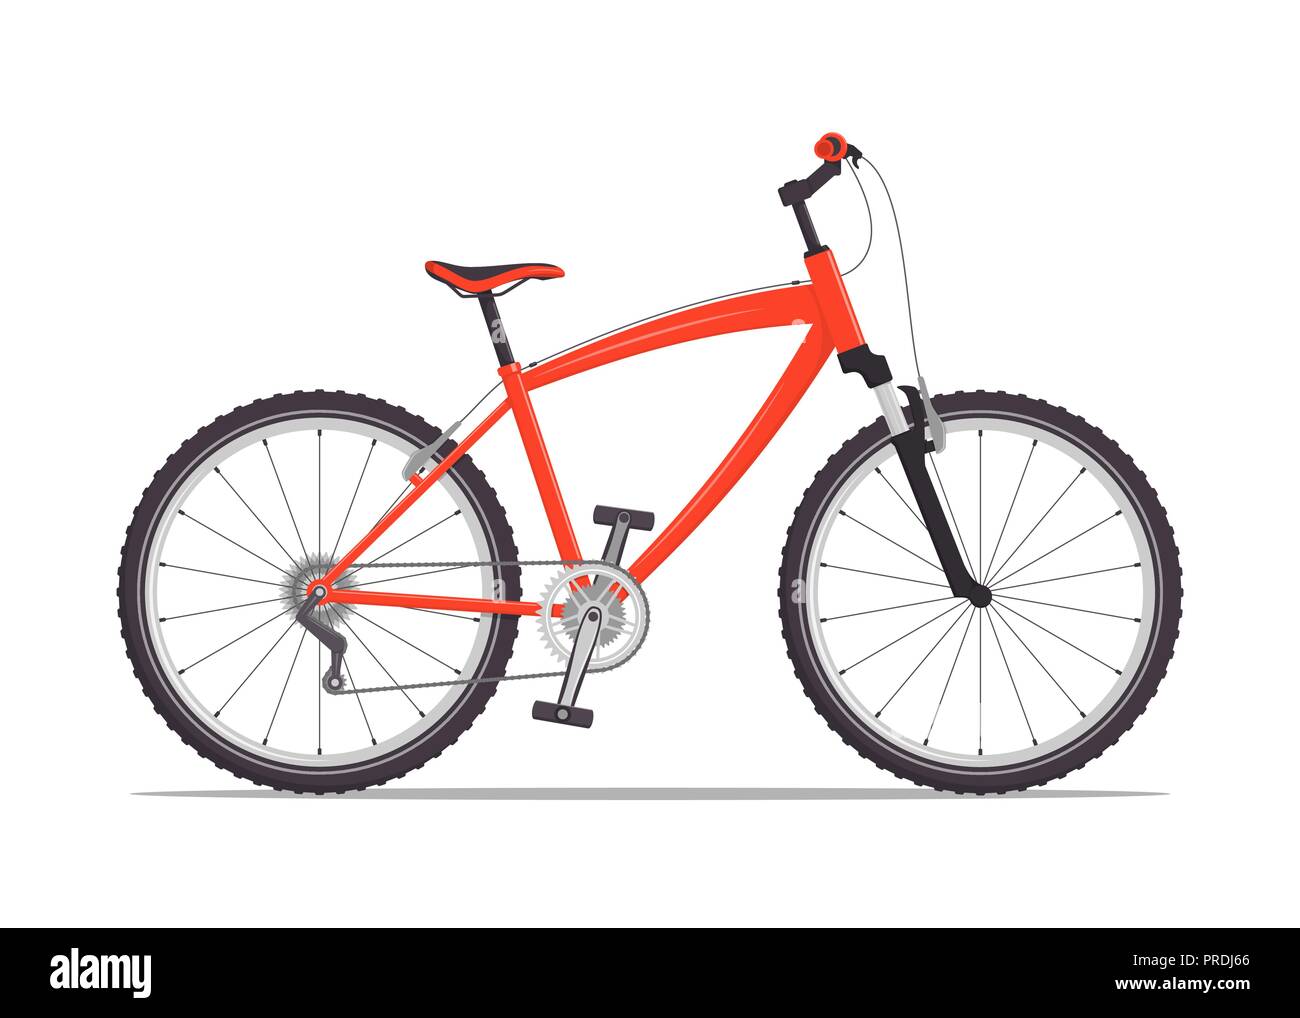 Moderne Stadt oder Mountainbike mit V-Bremsen. Multi-speed Fahrrad für Erwachsene. Vektor flachbild Illustration, isoliert auf weißem Stock Vektor